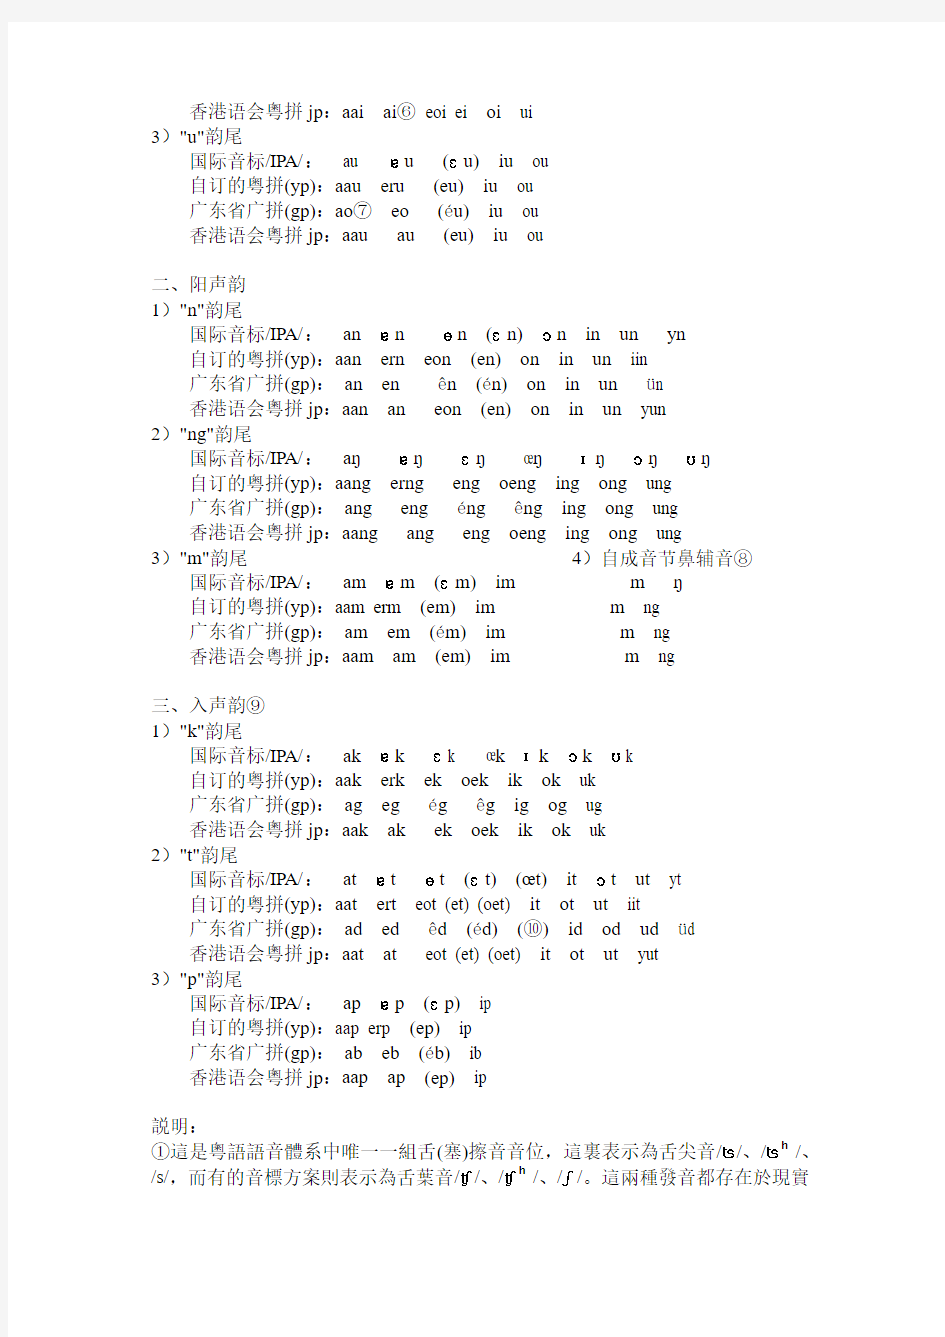 粤语拼音的发音解释,暨目前较常用的粤拼方案的比较